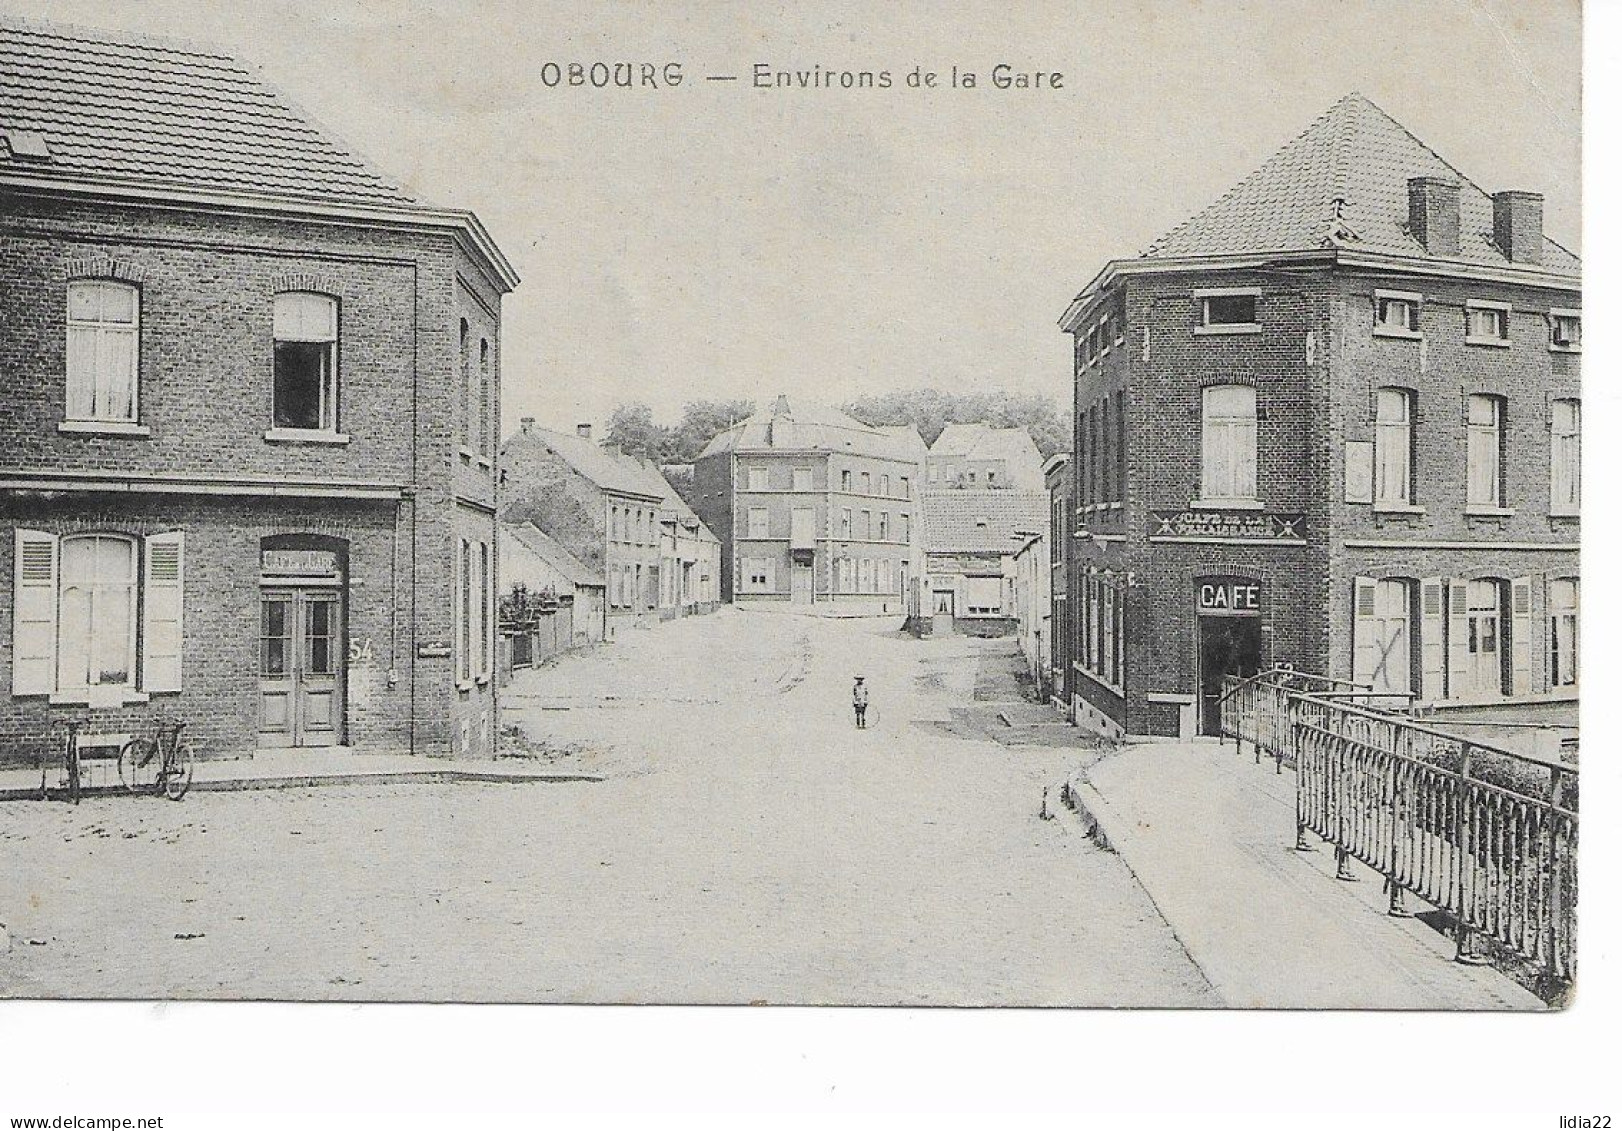 Obourg (Mons)    Environs De La Gare - Mons